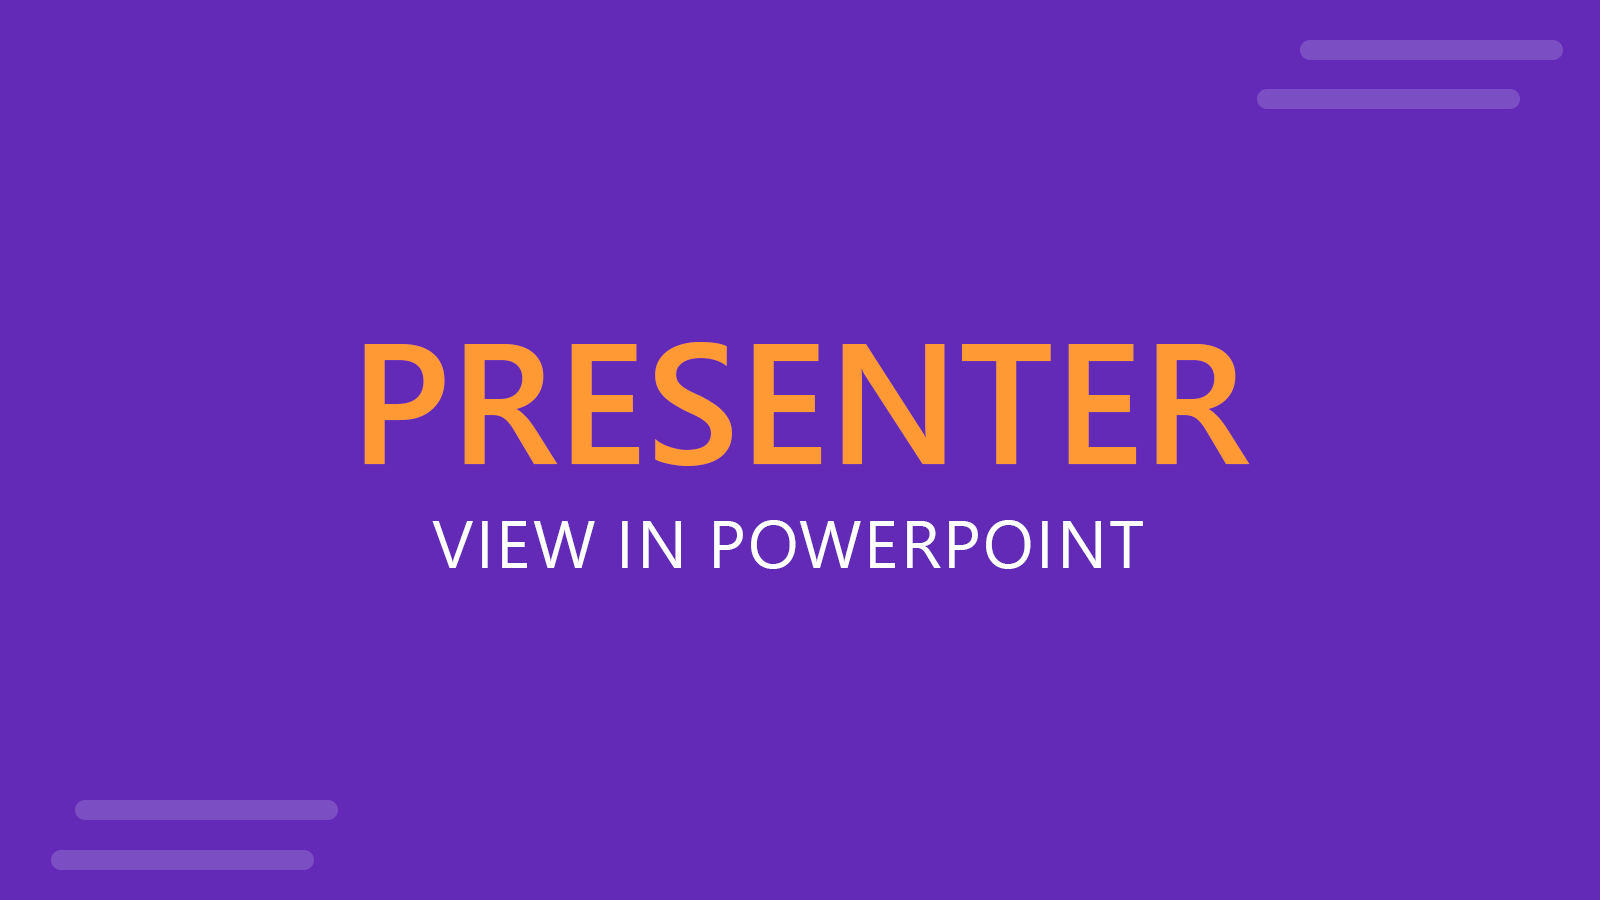 Presenter View in PowerPoint